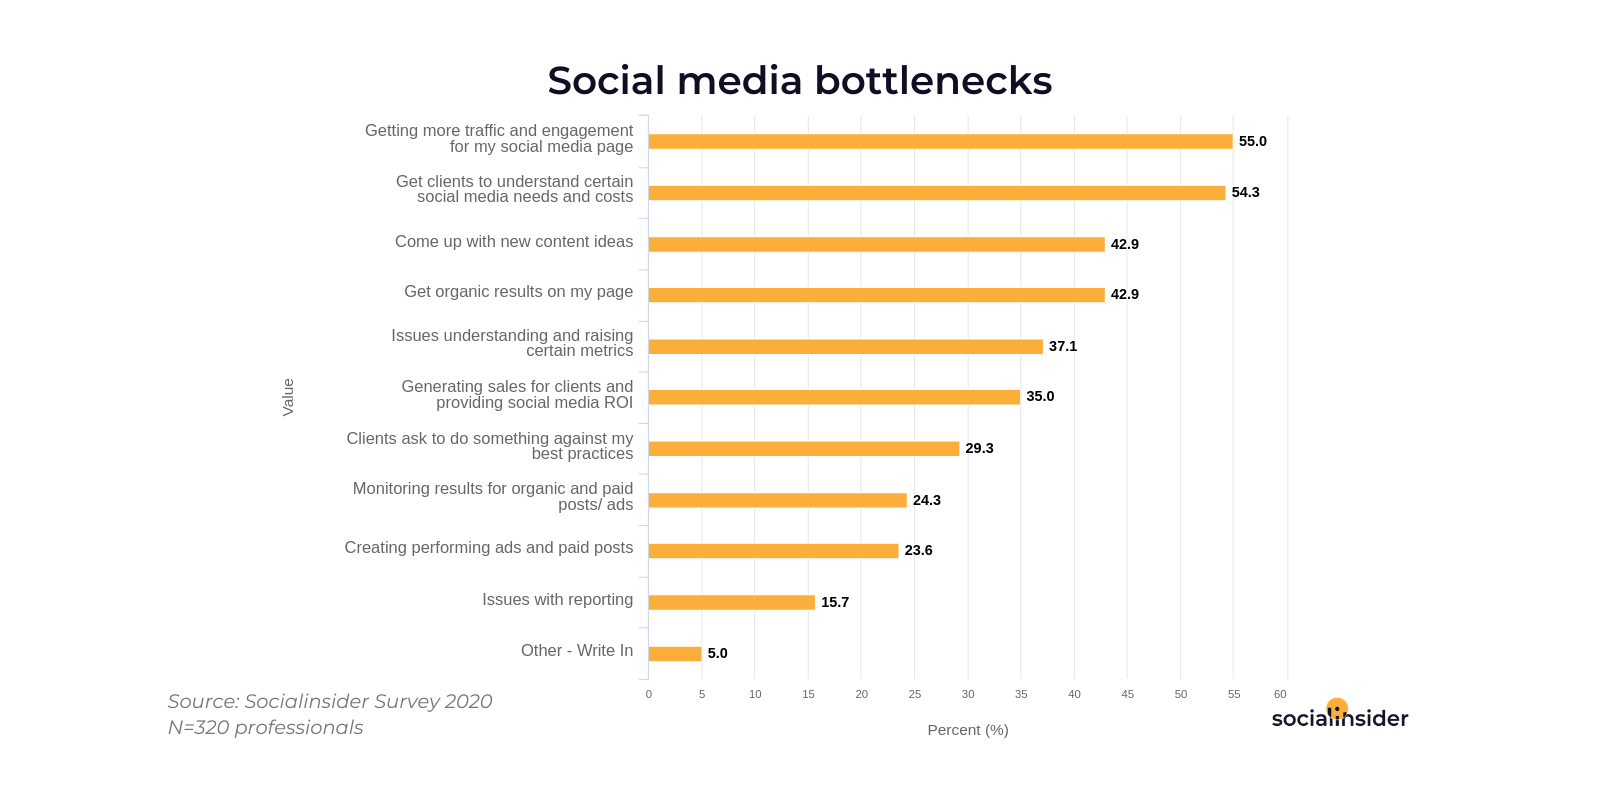 Most common social media bottlenecks